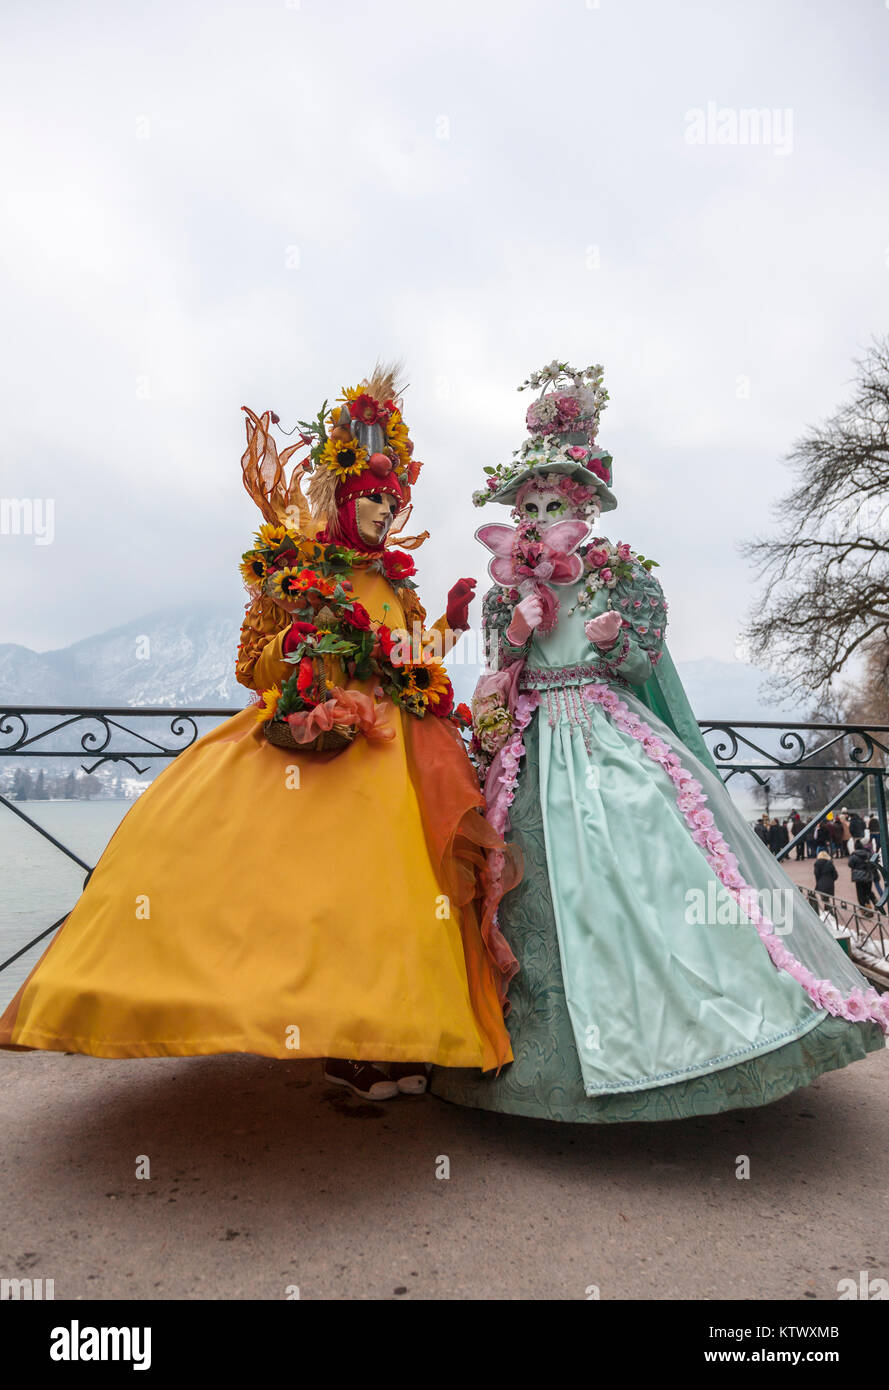 Annecy, Frankreich, 23. Februar 2013: Bild von einer verschleierten Paar in Annecy, Frankreich posiert, während einer venezianischen Karneval, feiert die Schönheit der Stockfoto